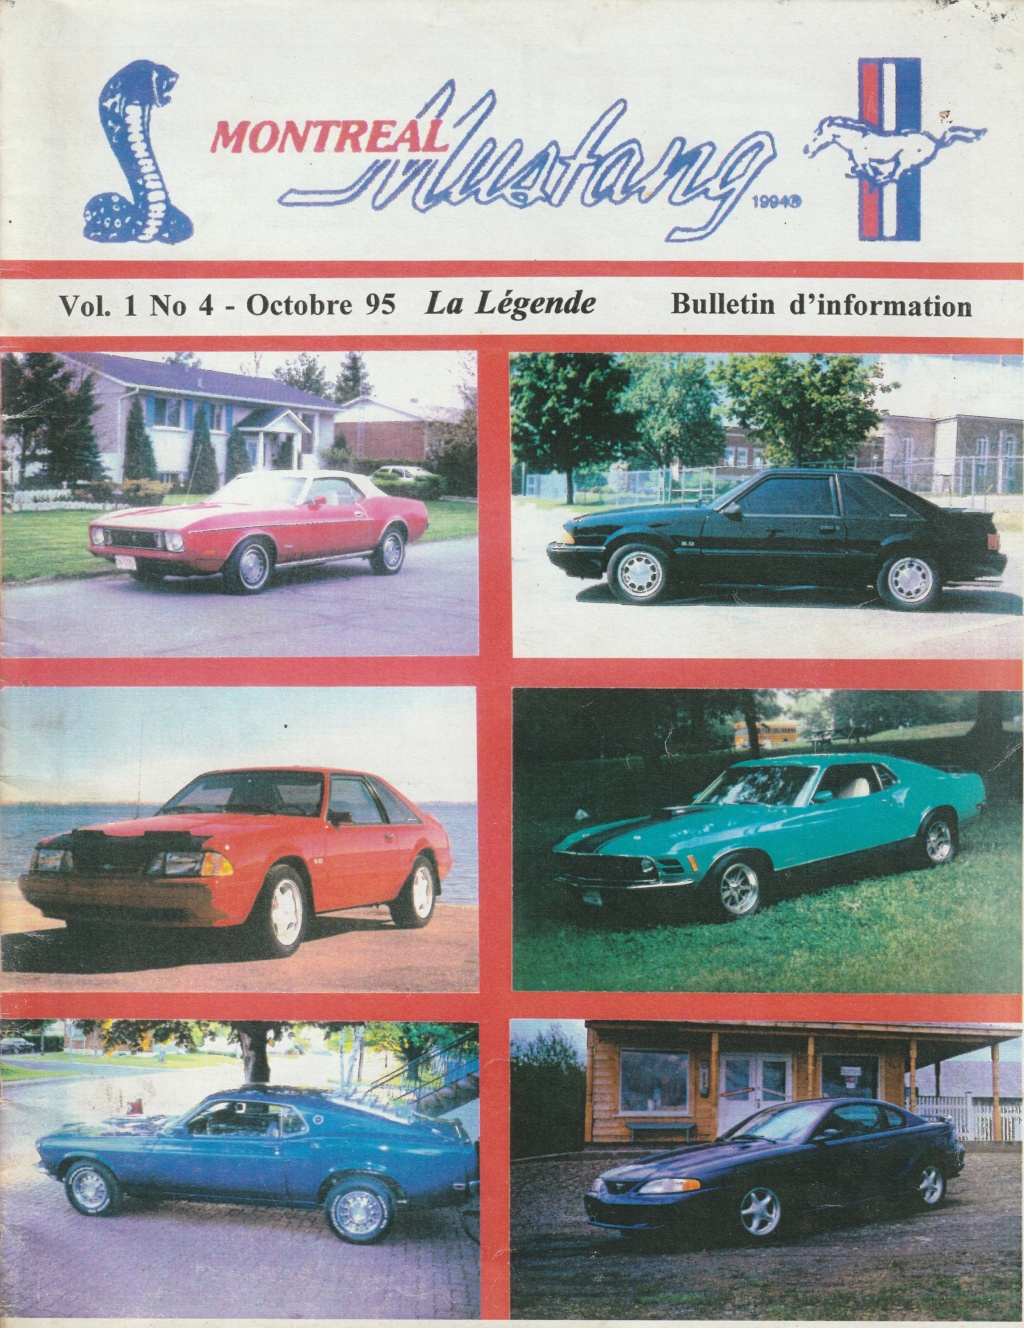 Montréal Mustang dans le temps! 1981 à aujourd'hui (Histoire en photos) - Page 8 Img_2346